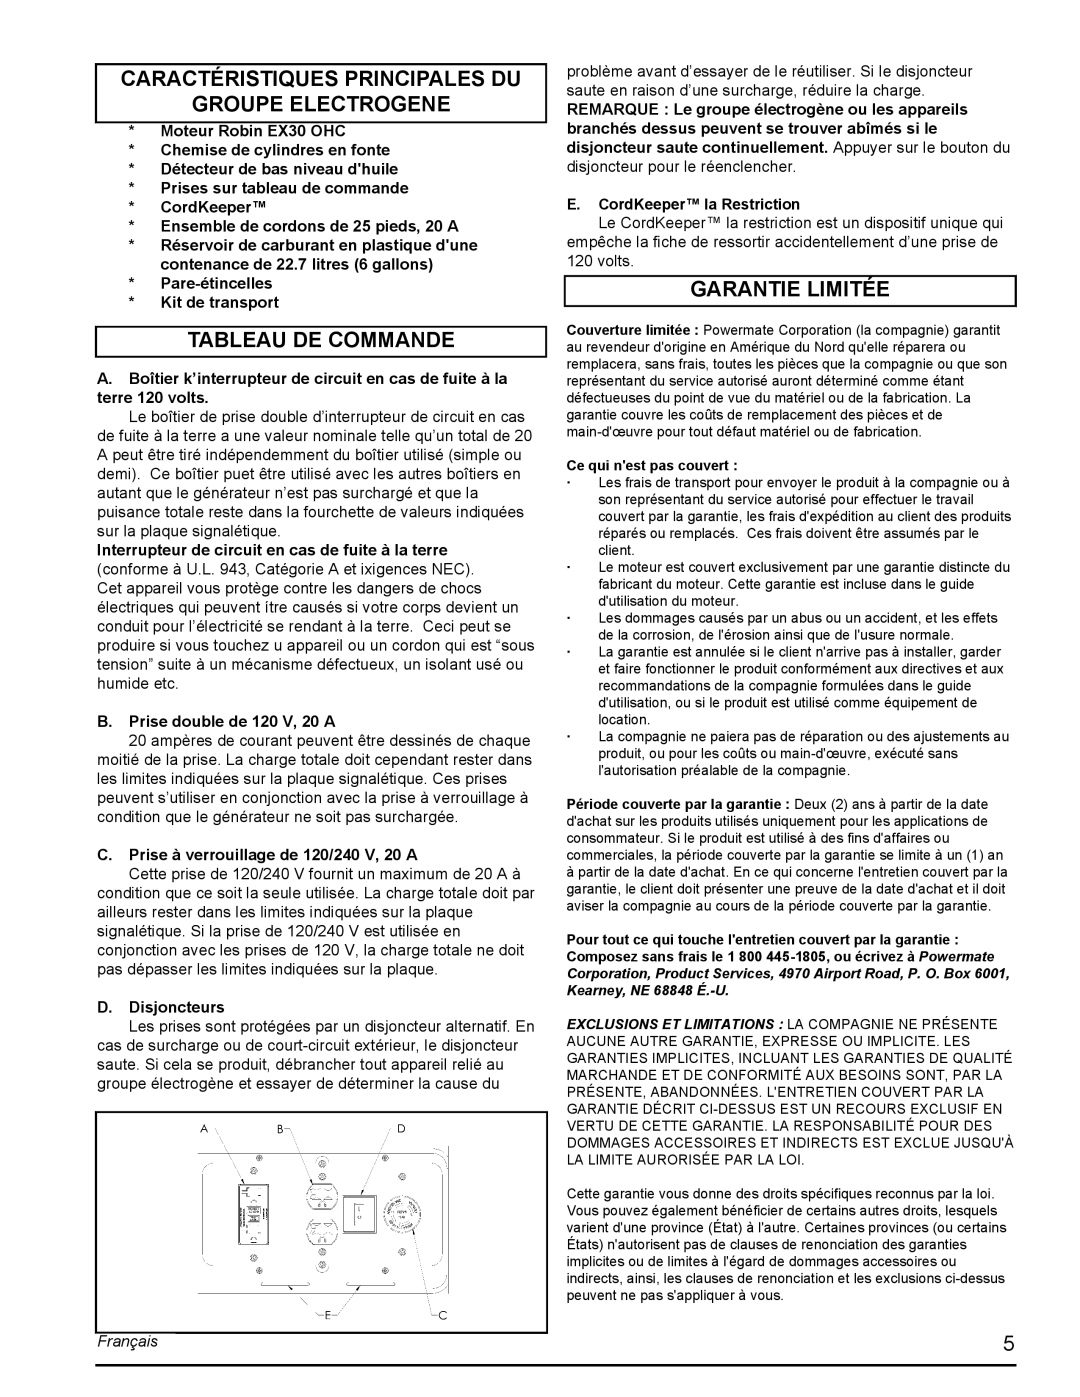 Powermate PMC435001 Caractéristiques Principales Du Groupe Electrogene, Tableau De Commande, Garantie Limitée, Français 